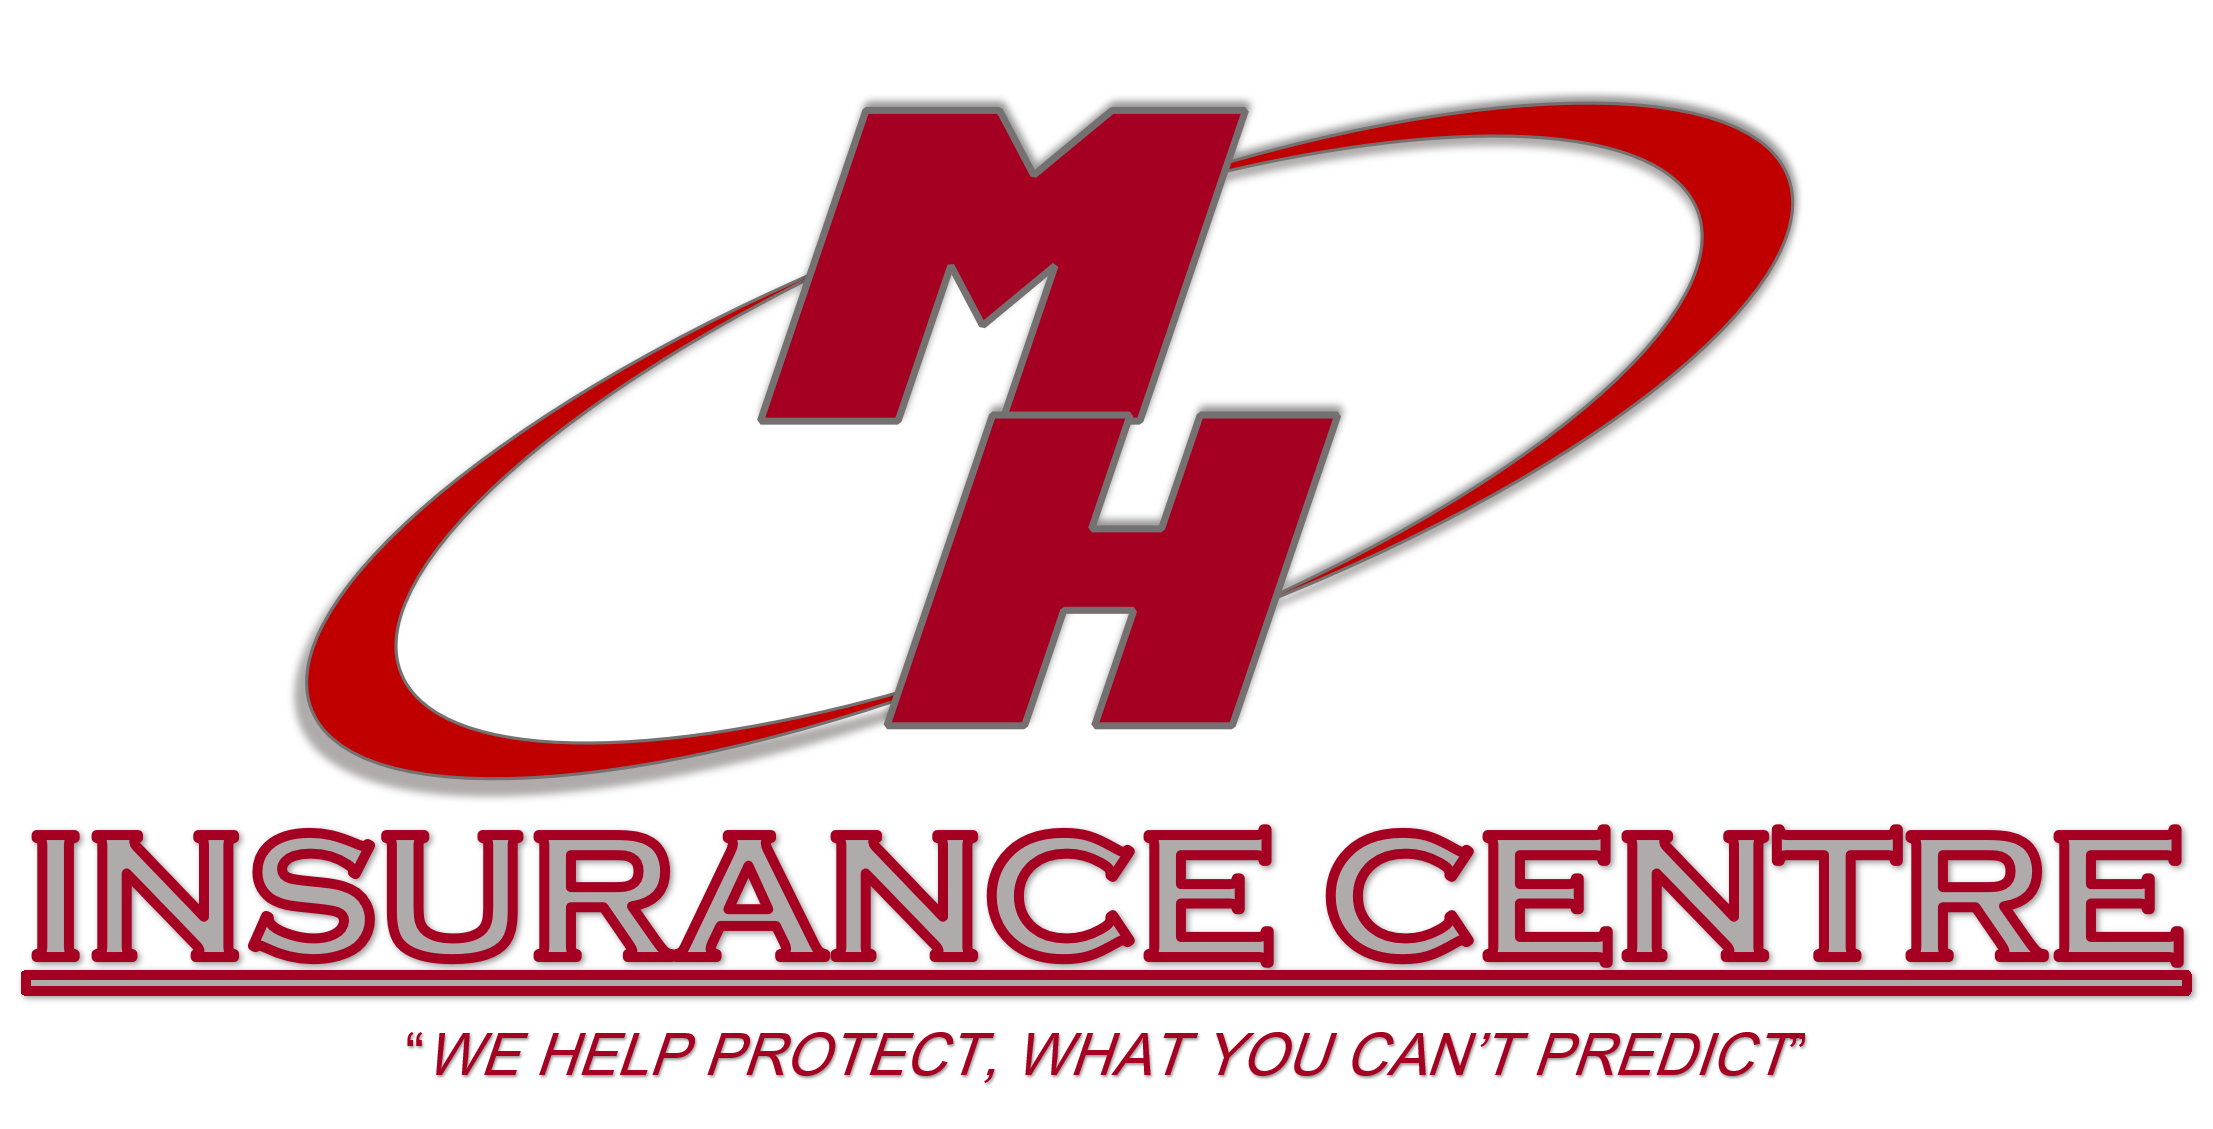 MH Insurance Centre, MH Insurance, Insurance, Car Insurance ...